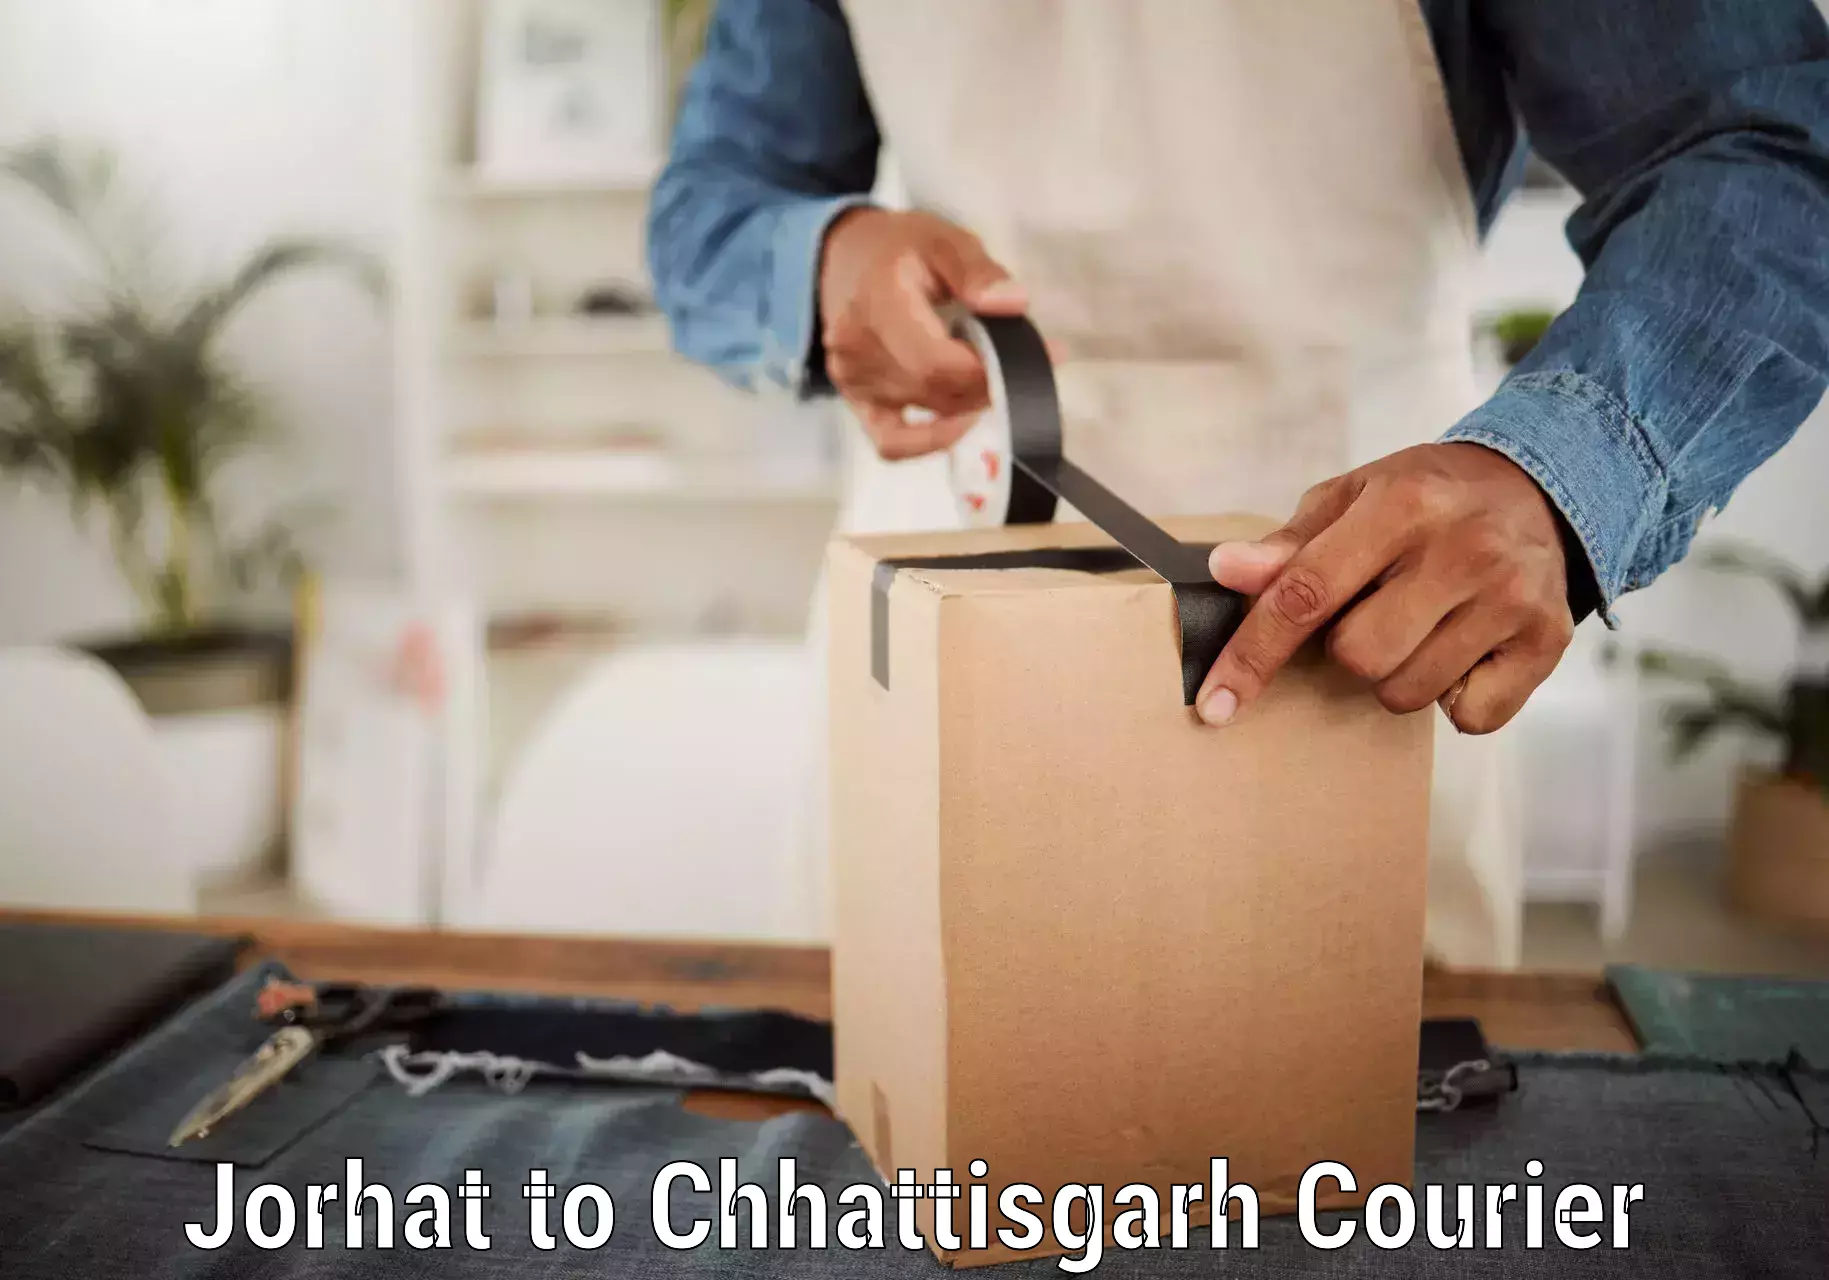 International courier networks Jorhat to Raigarh Chhattisgarh